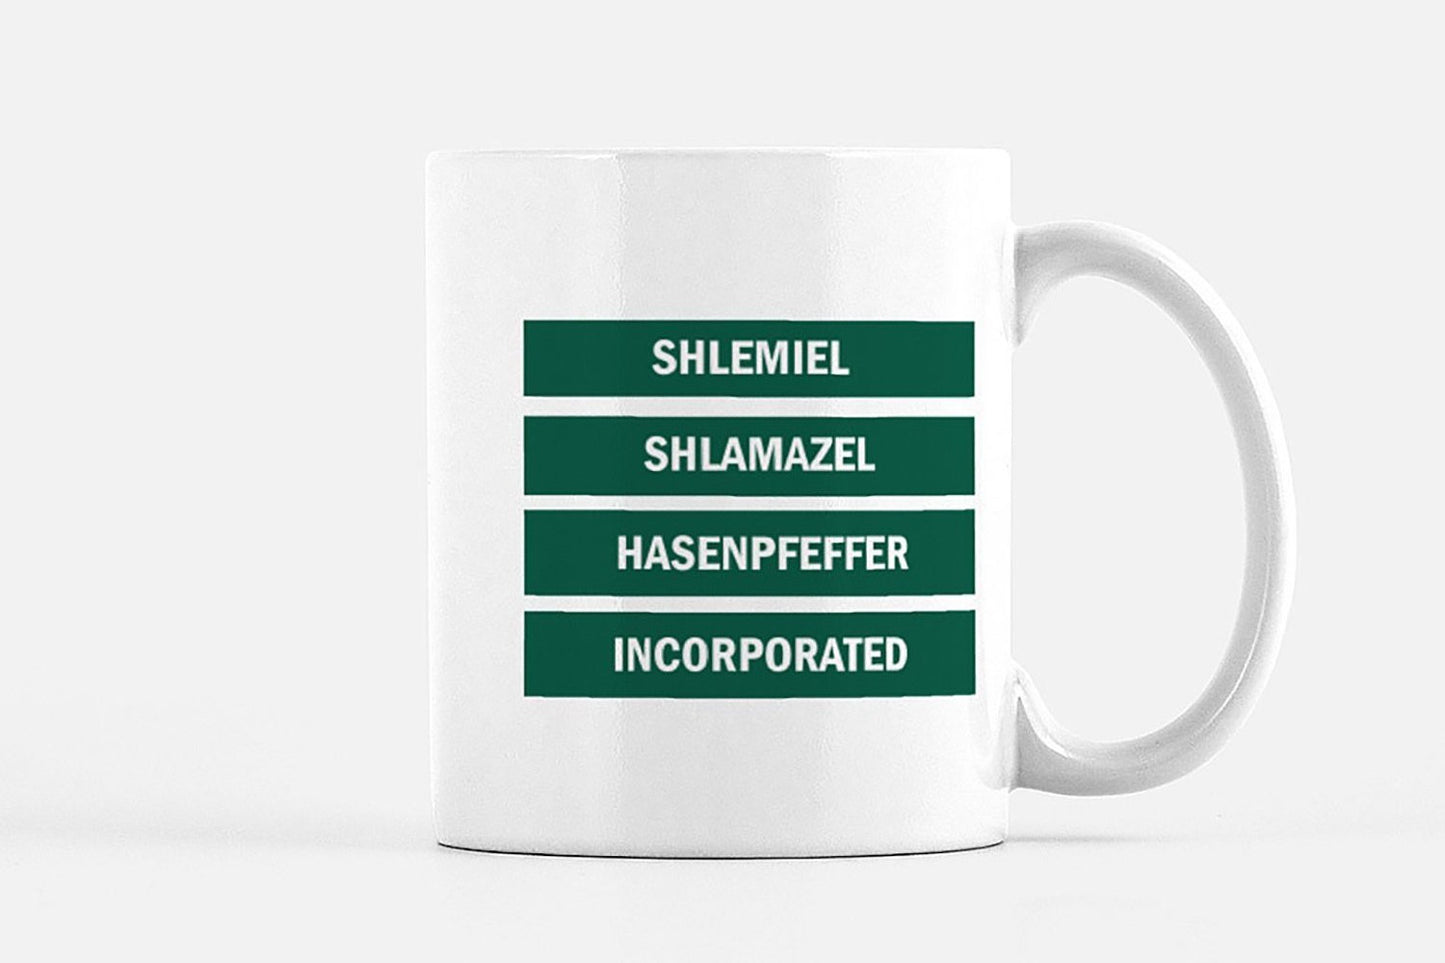 shlemiel shlamazel hasenpeffer incorporated - laverne and shirley mug